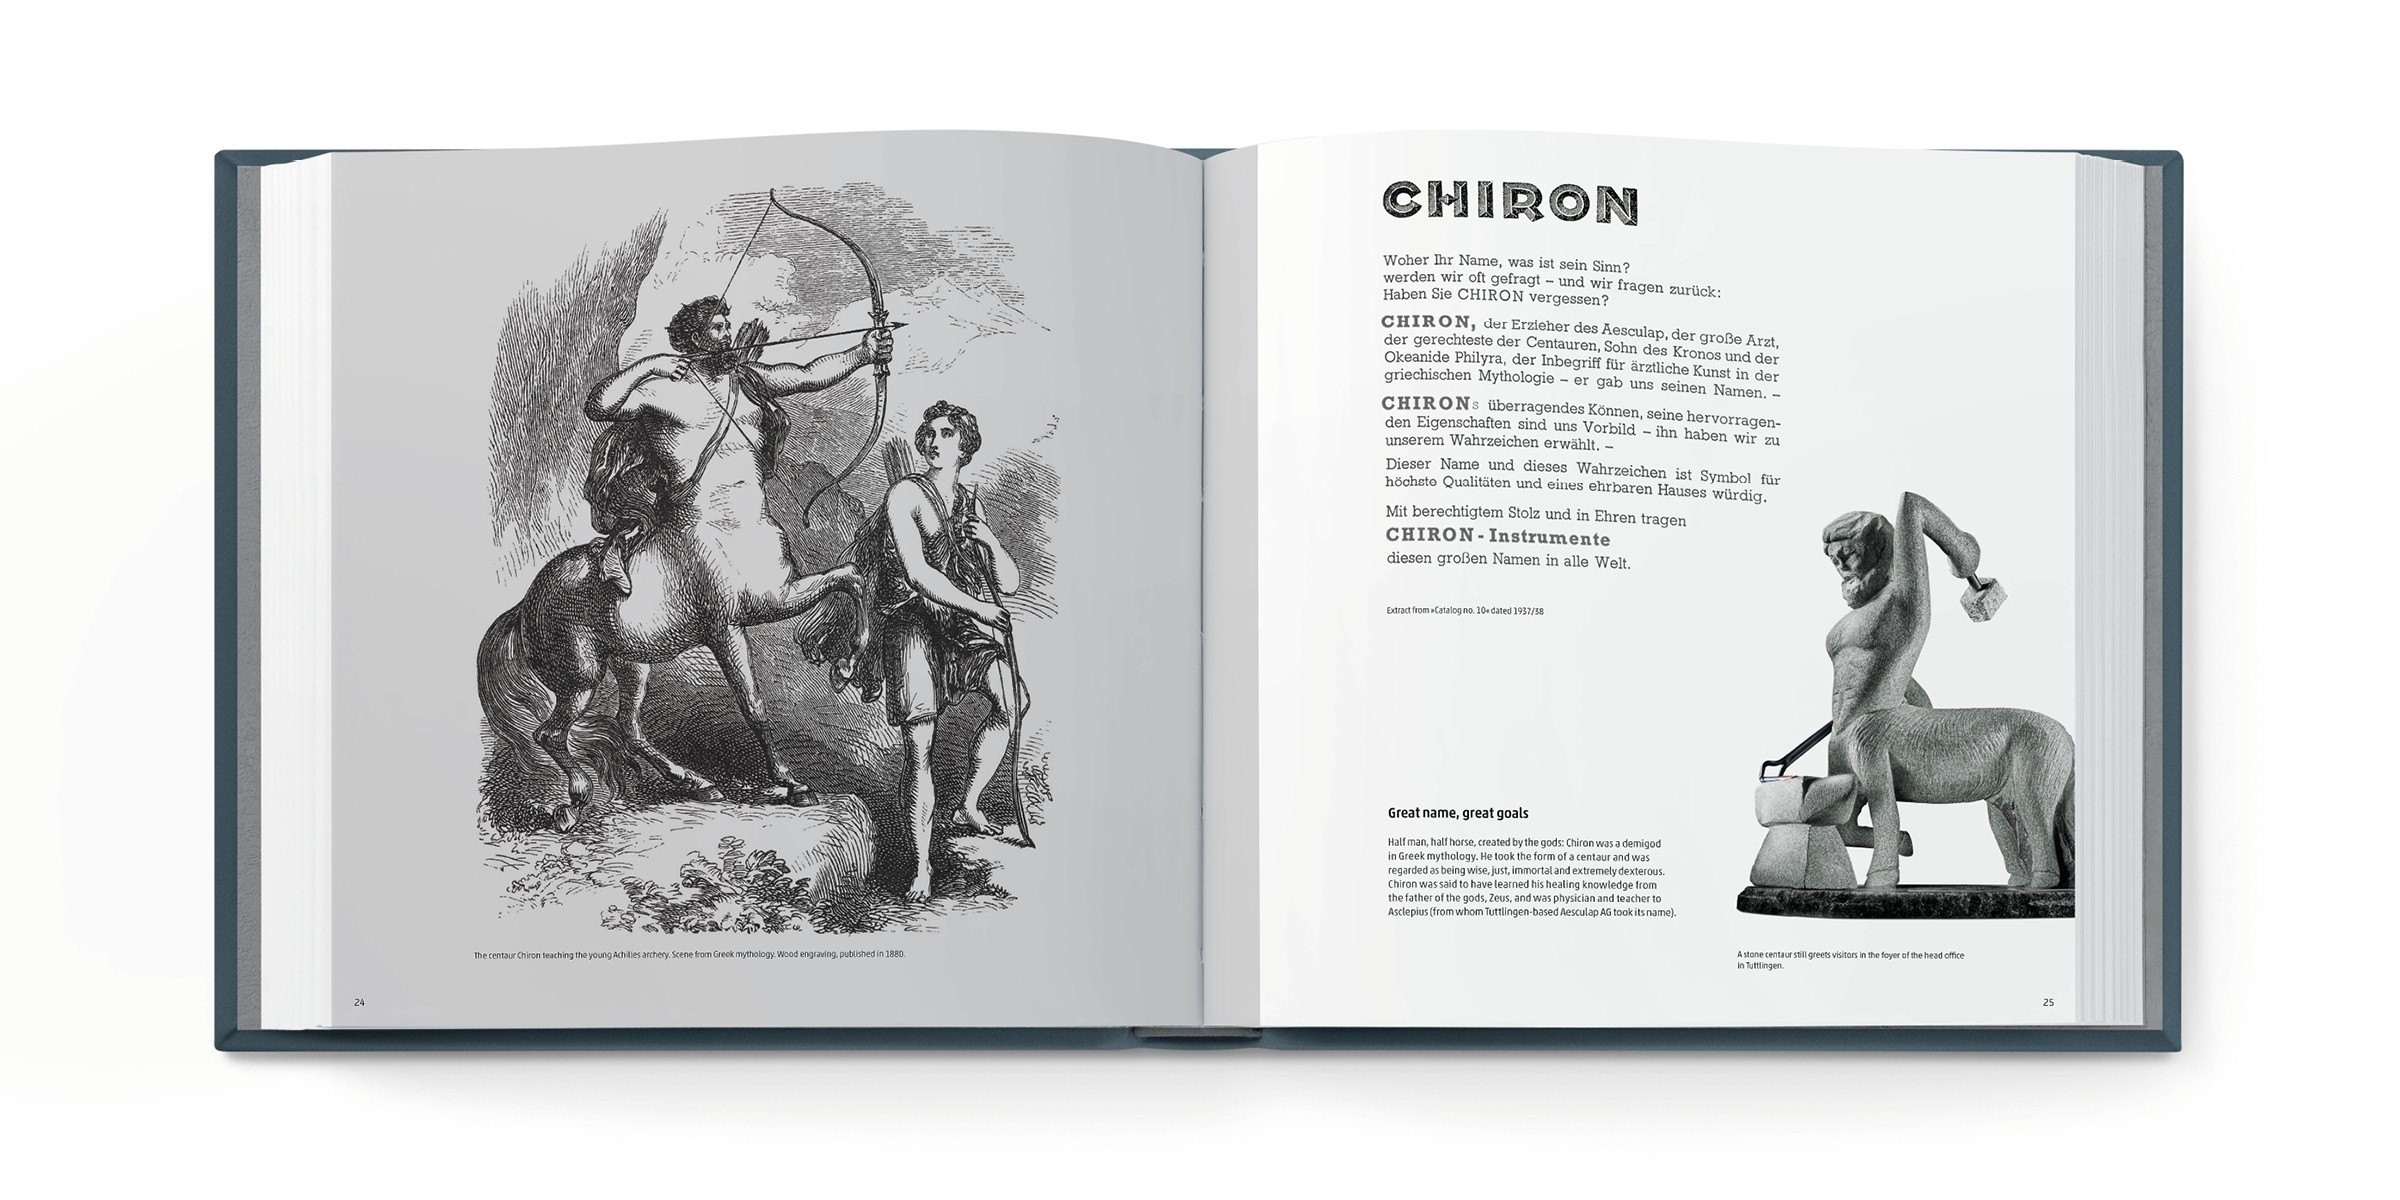 CHIRON – großer Name, große Ziele und Symbol für höchste Qualität